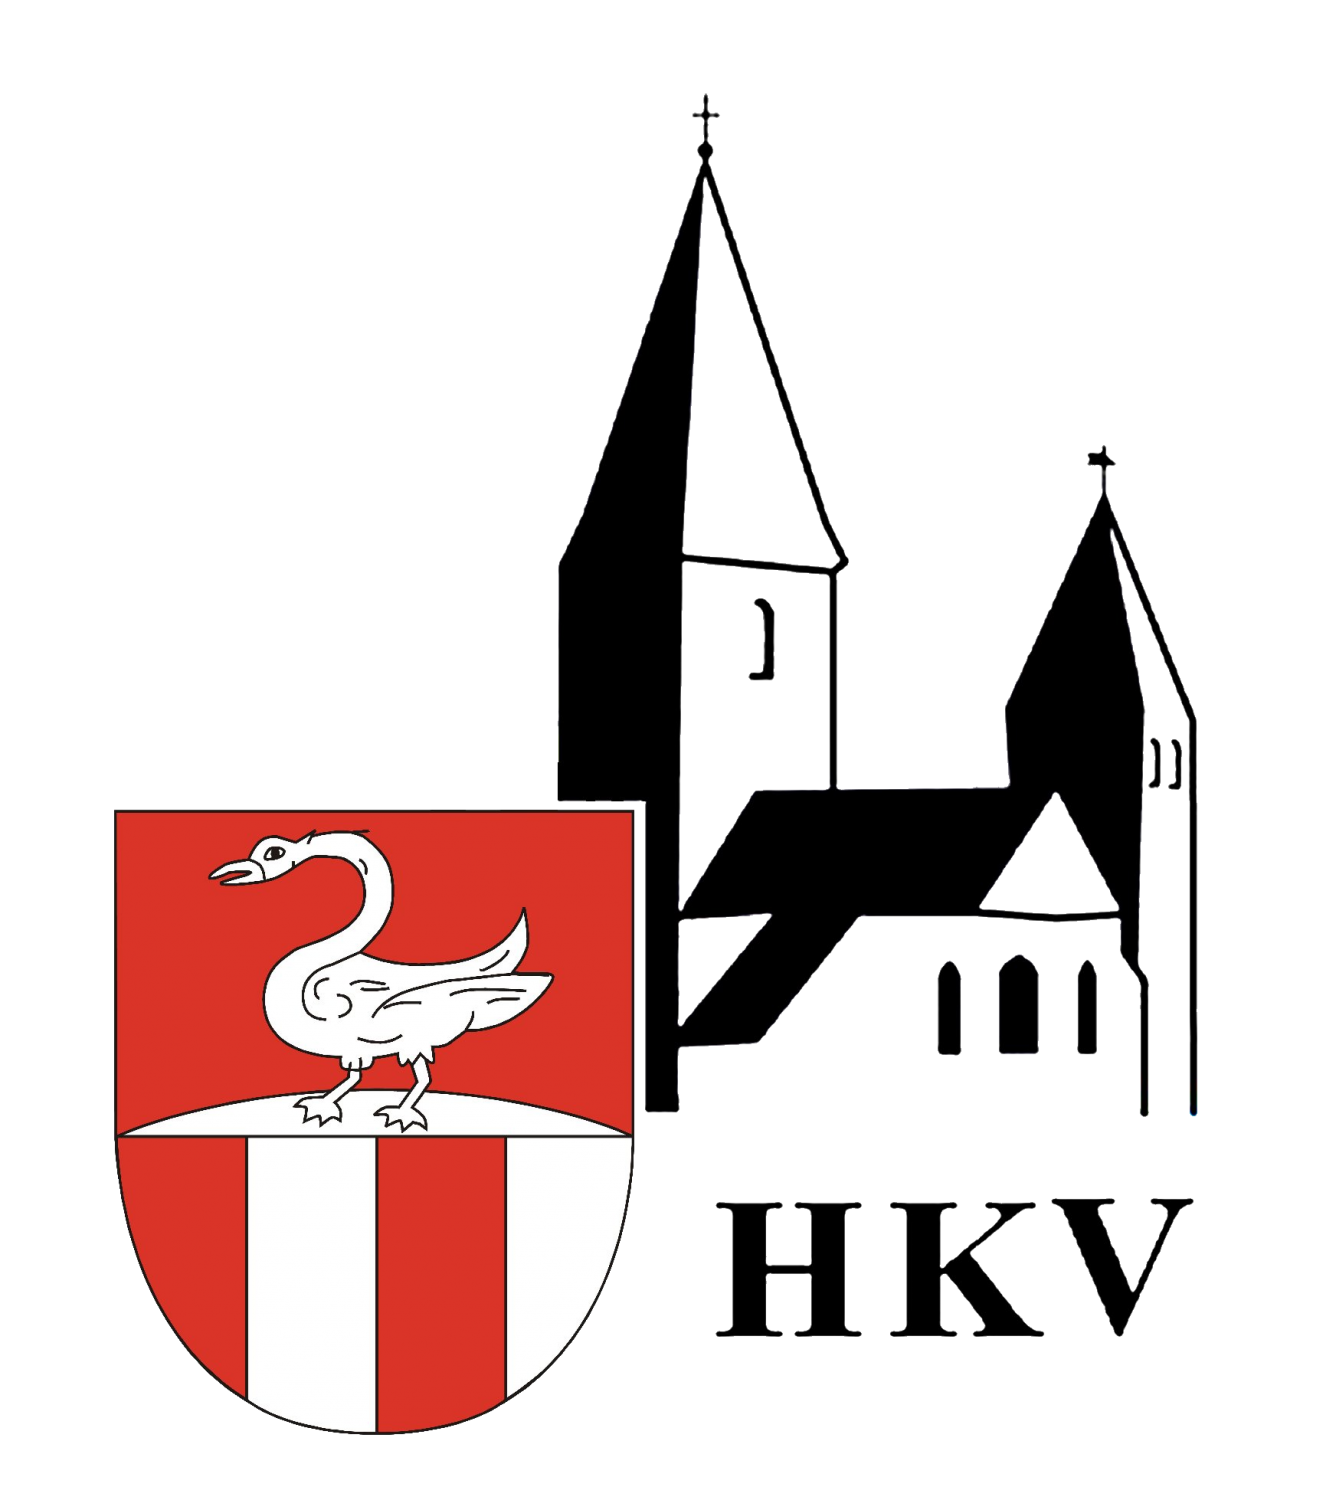 Logo Hkv